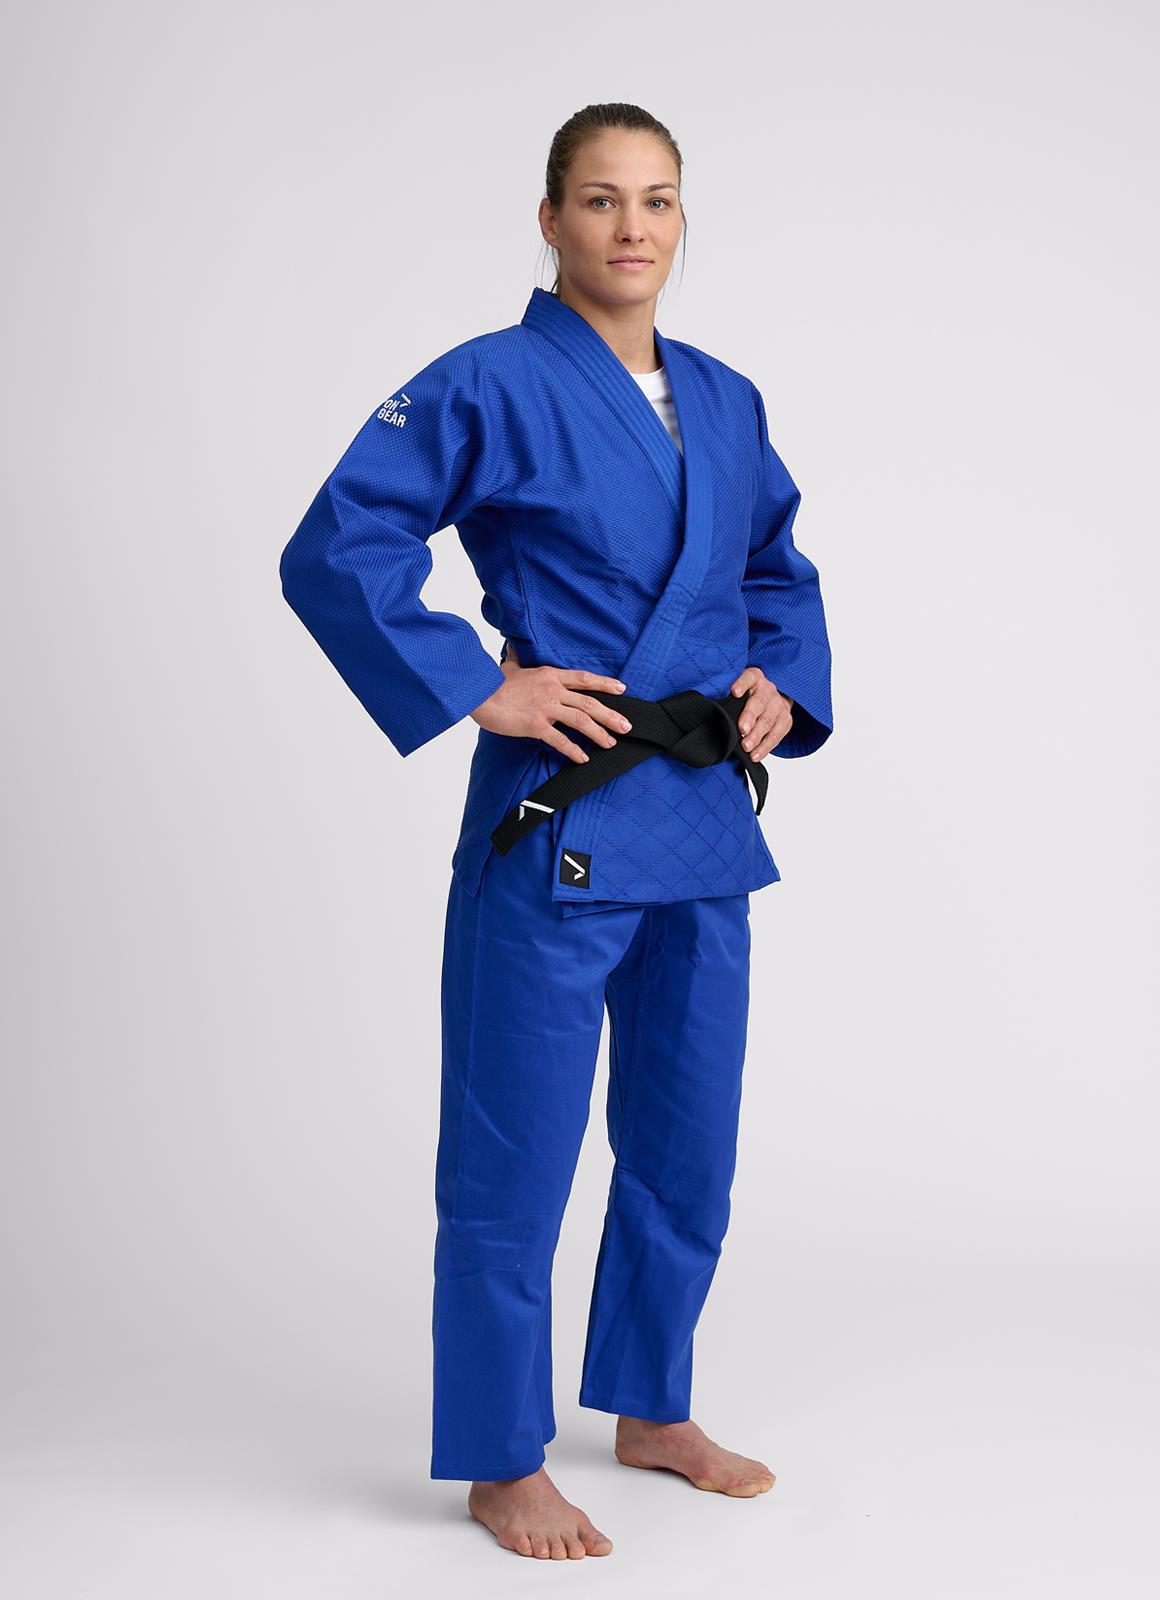 een kopje kralen voor mij Ippon Gear Basic 2 blauw volledig judopak - JI551 met jas en broek